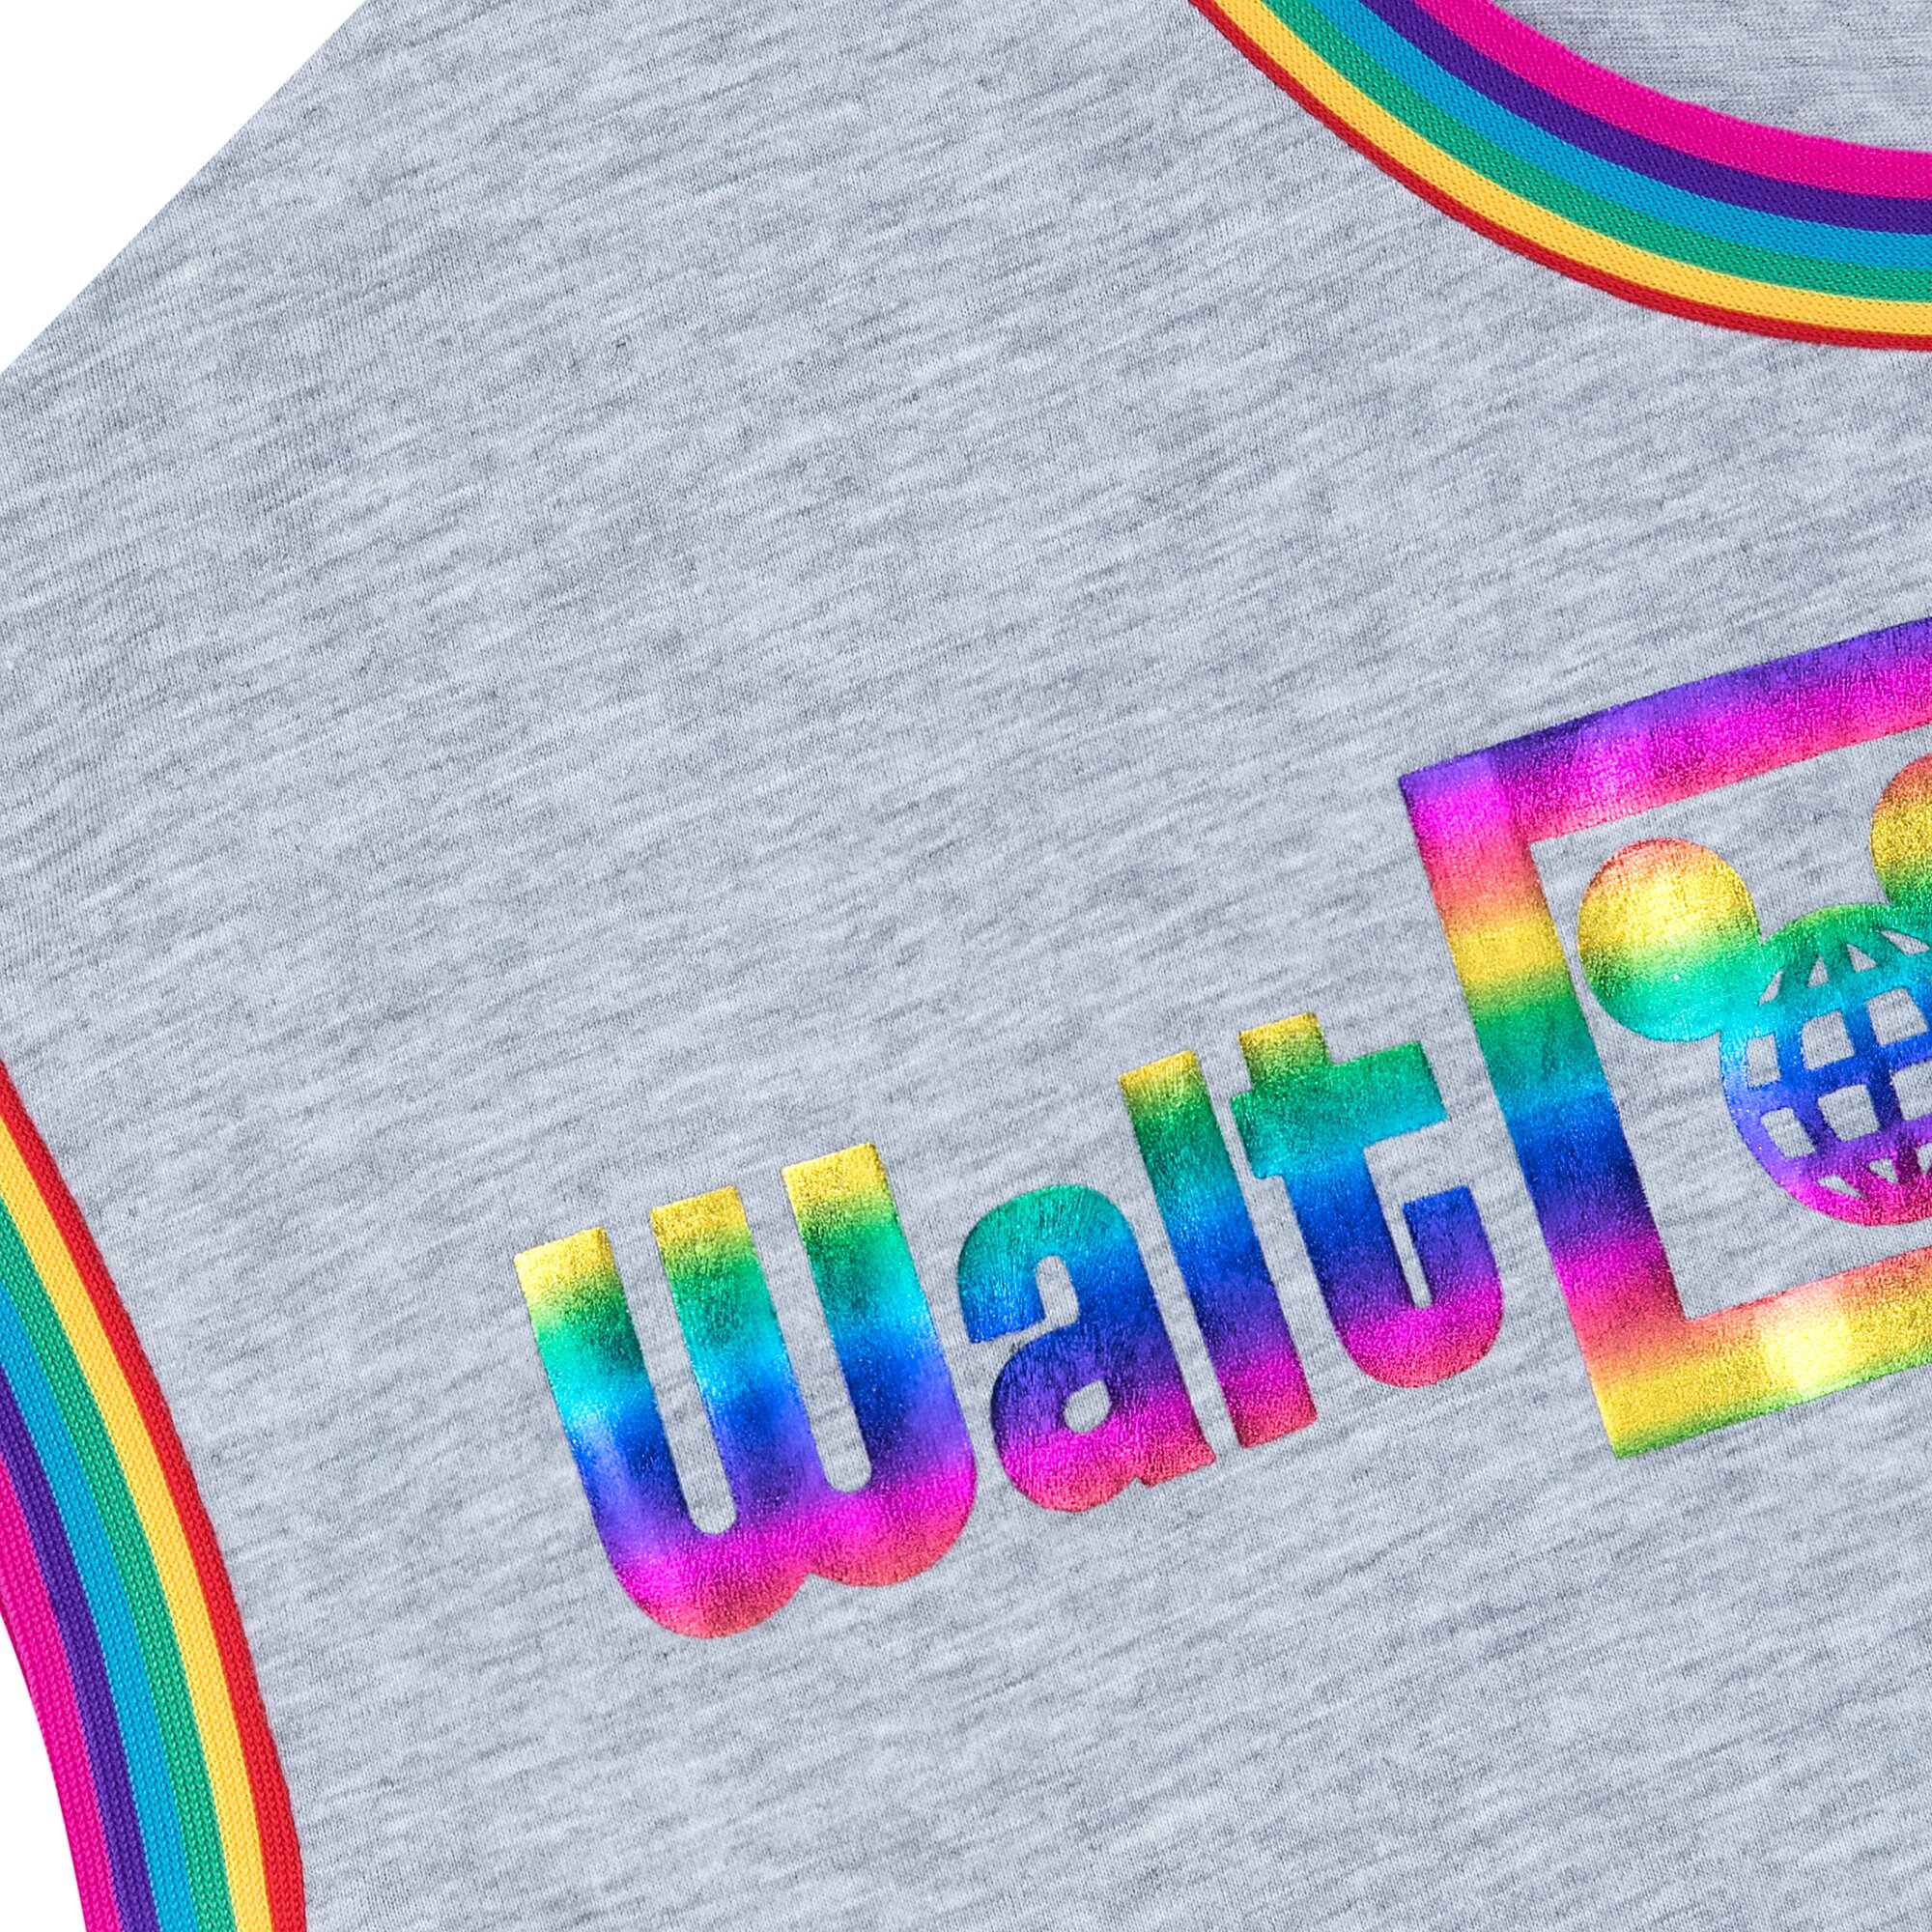 Walt Disney World Resort Rainbow Ringer T-Shirt for Women